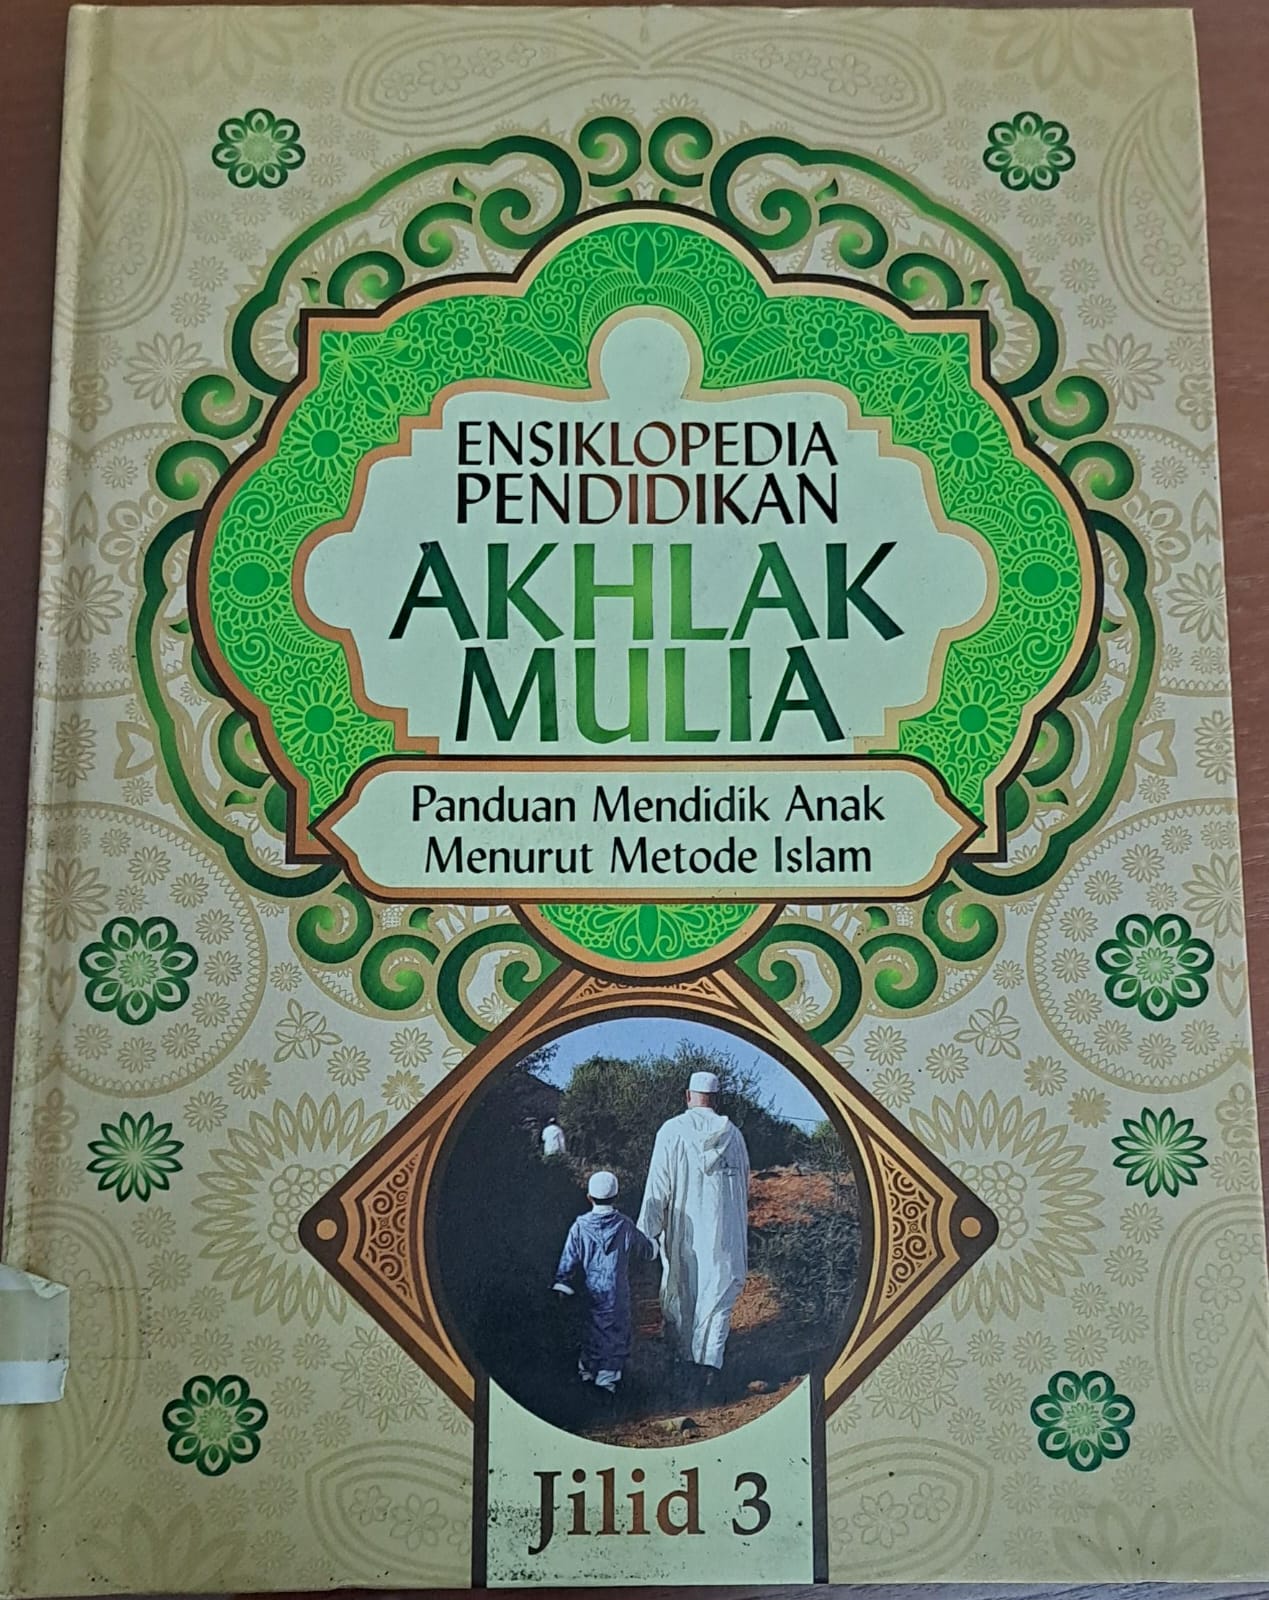 Ensiklopedia pendidikan akhlak mulia :  Panduan mendidik anak menurut metode islam jilid 3